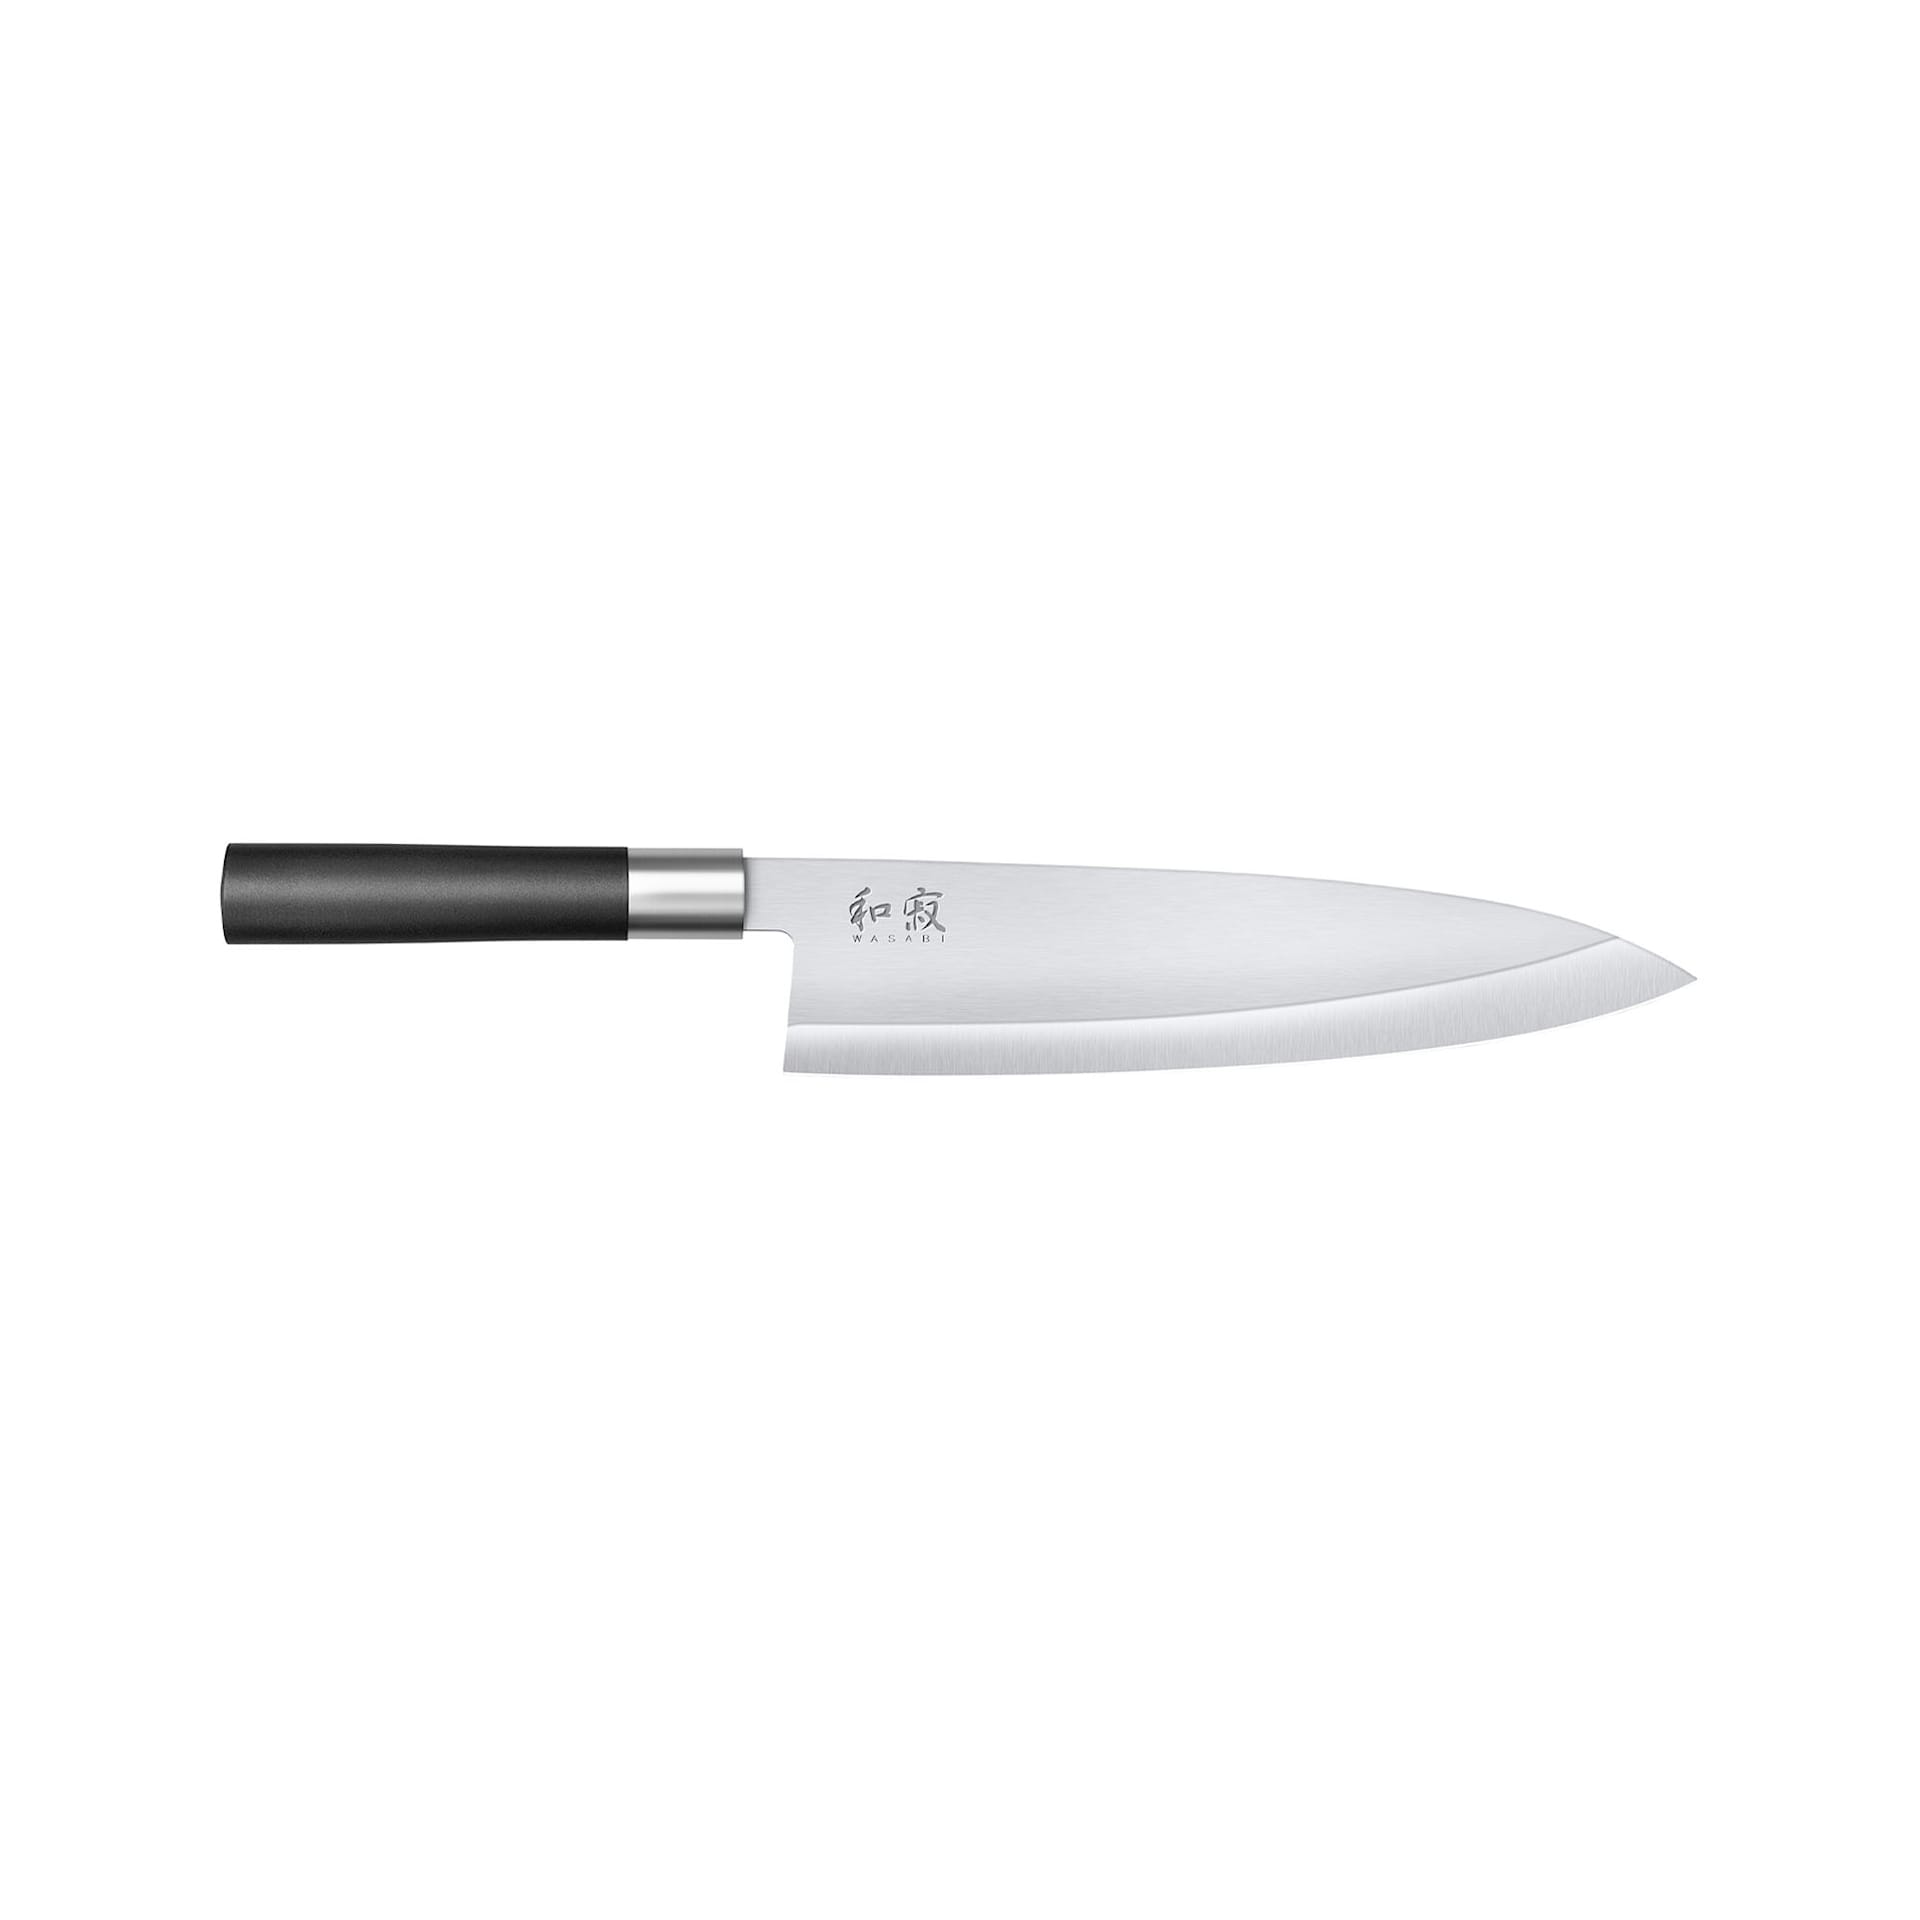 KAI WASABI Deba Chef's knife 21 cm - KAI - NO GA